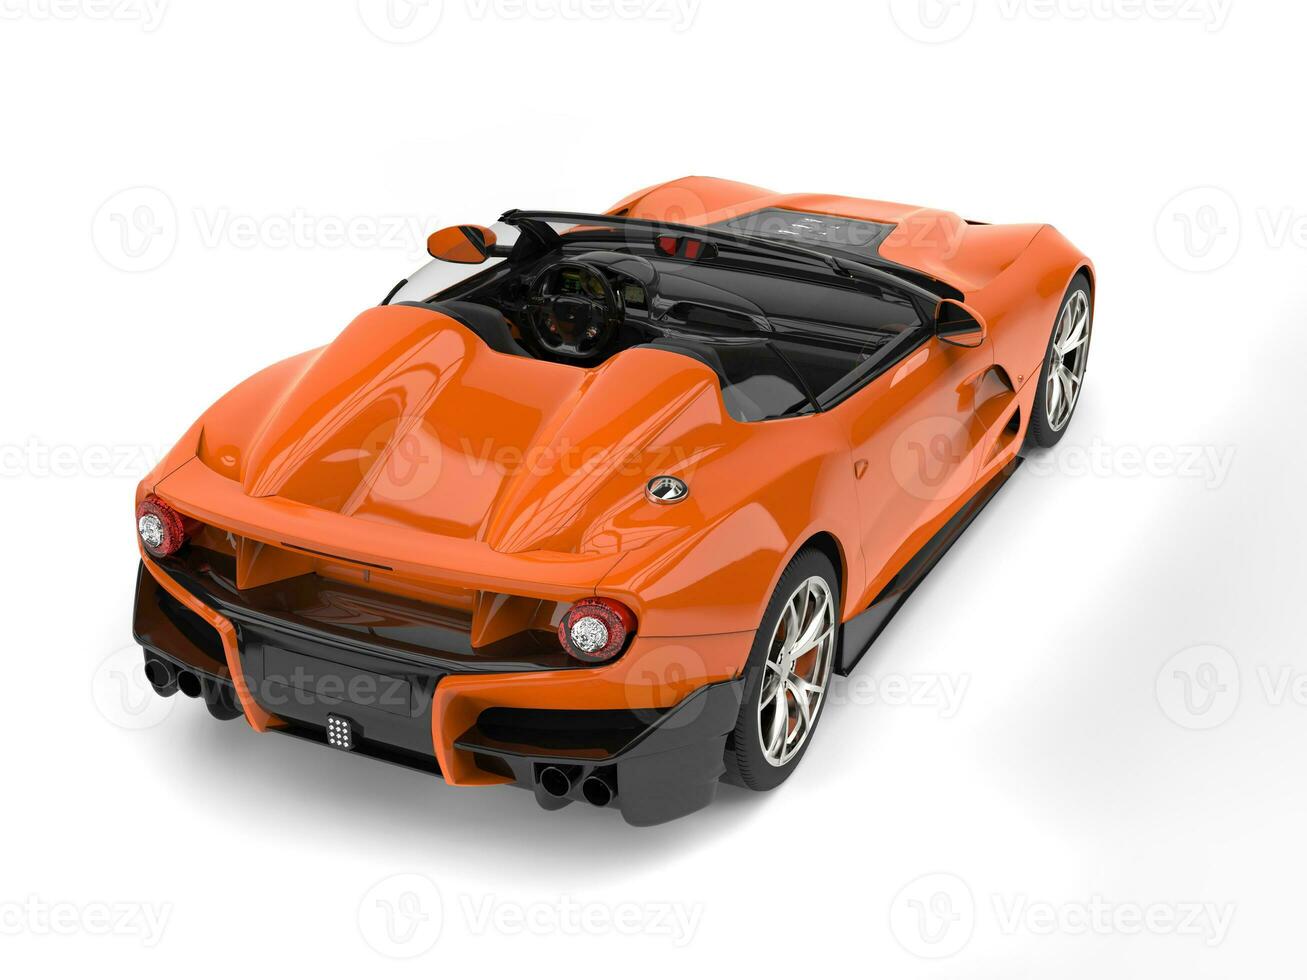 Feu Orange moderne convertible super des sports voiture - retour vue photo